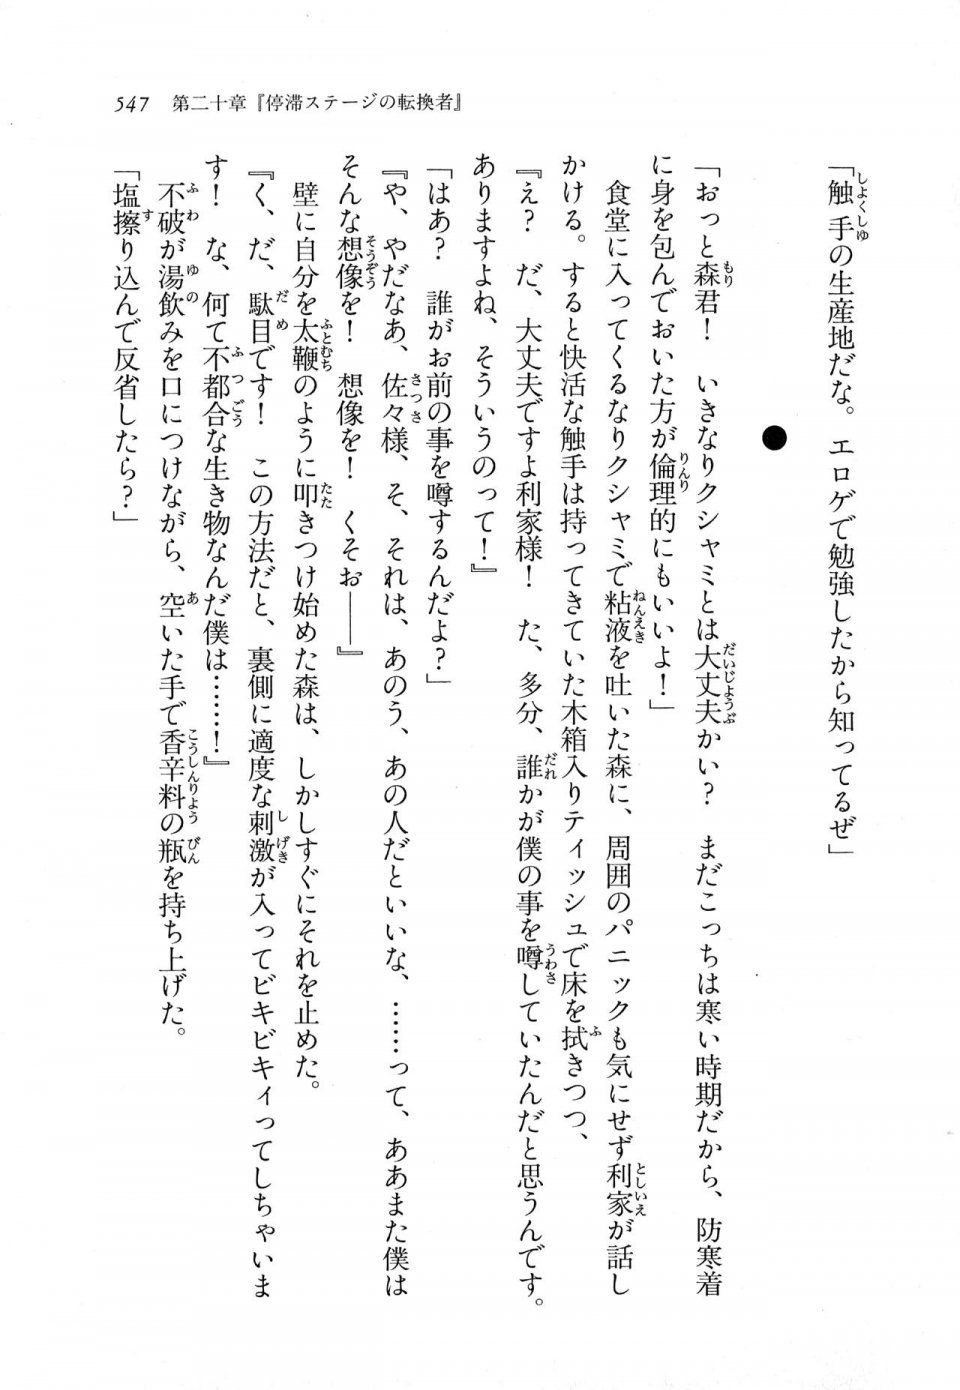 Kyoukai Senjou no Horizon LN Vol 11(5A) - Photo #547